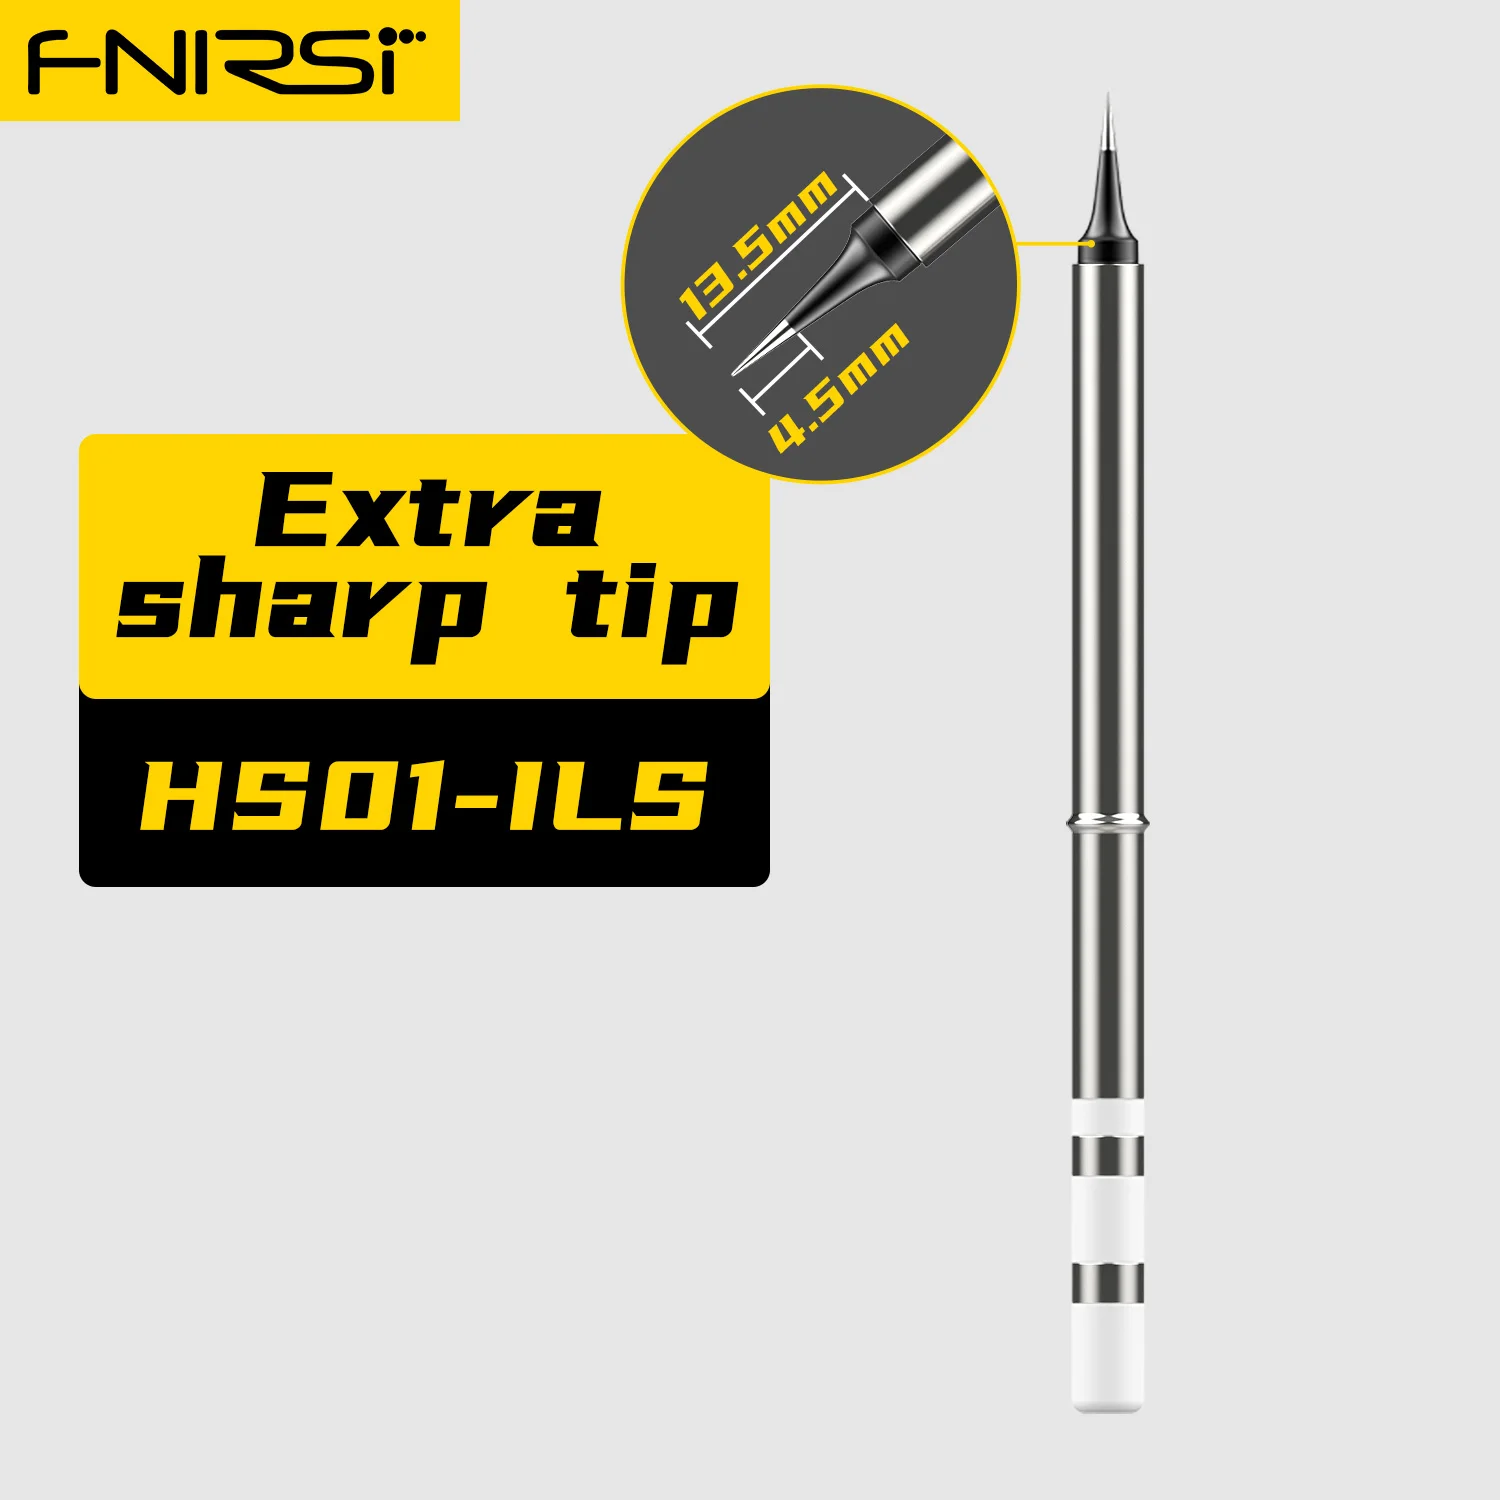 FNIRSI-Punta de soldador HS-01, Kit de estación de soldadura sin plomo, tipo de calefacción interna, HS01-BC2 B2 ILS KR K65 BC3